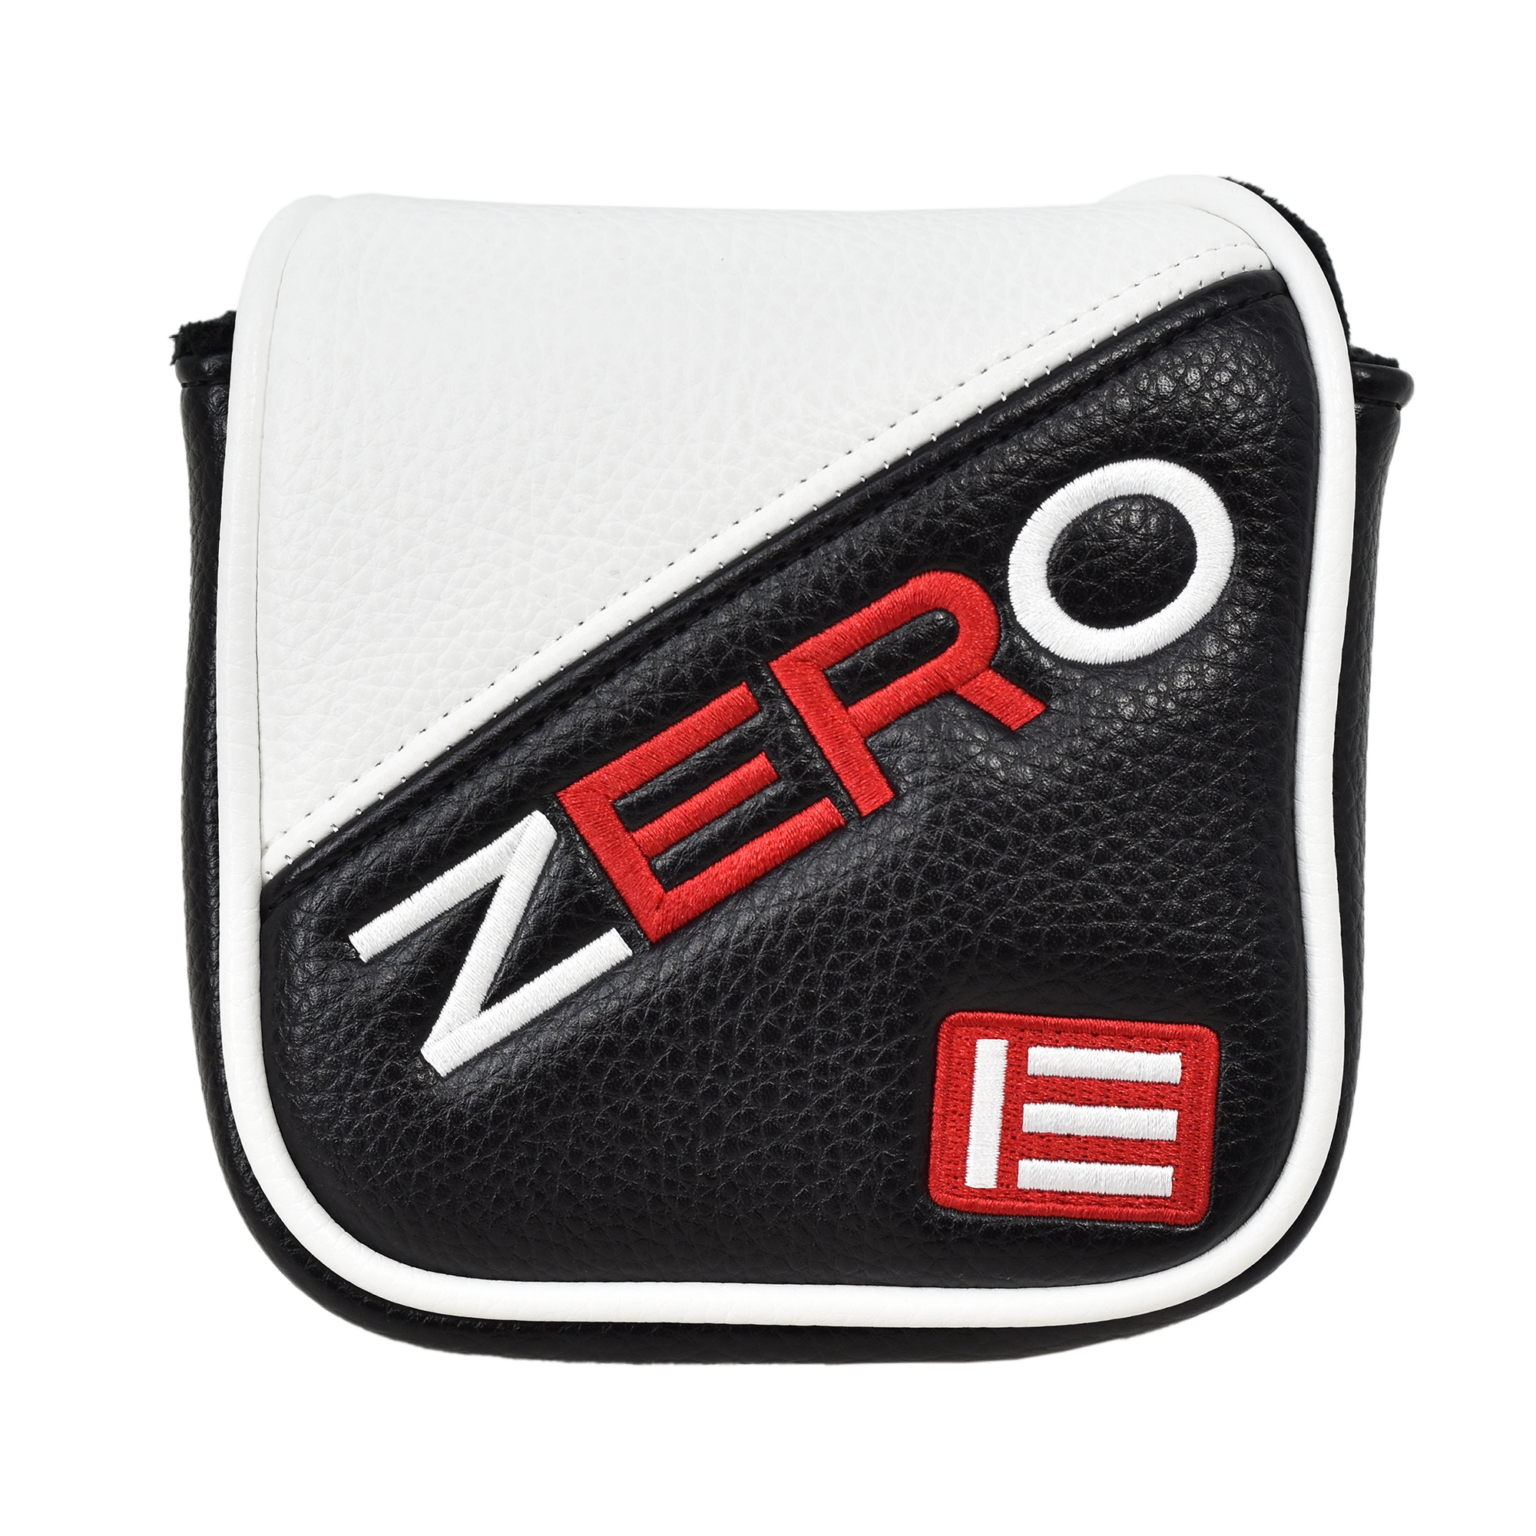 Evnroll ER Zero Z.1 Putter